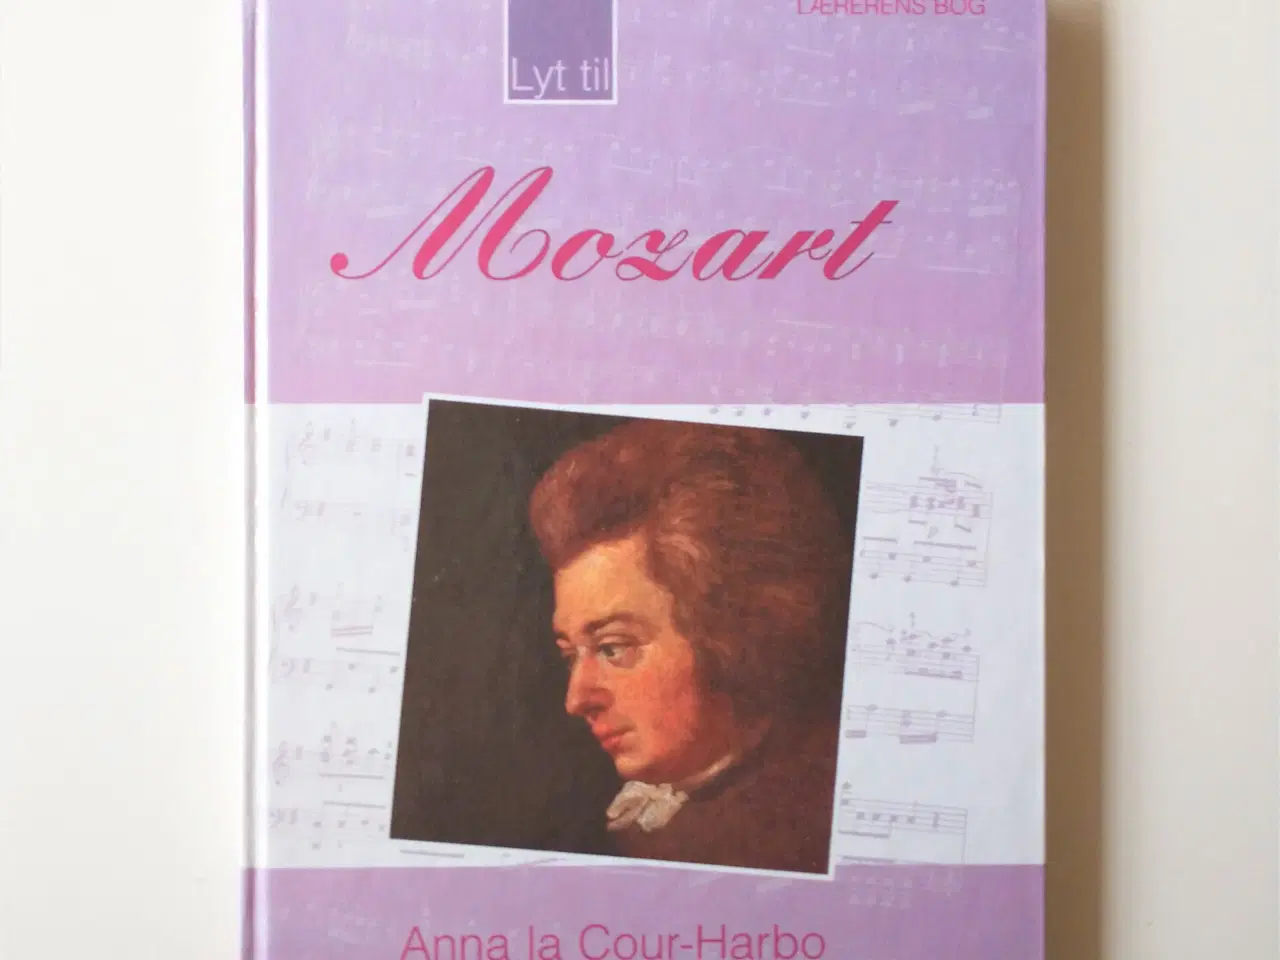 Billede 1 - Lyt til Mozart. Lærerens bog. Af Anna La Cour-Harb